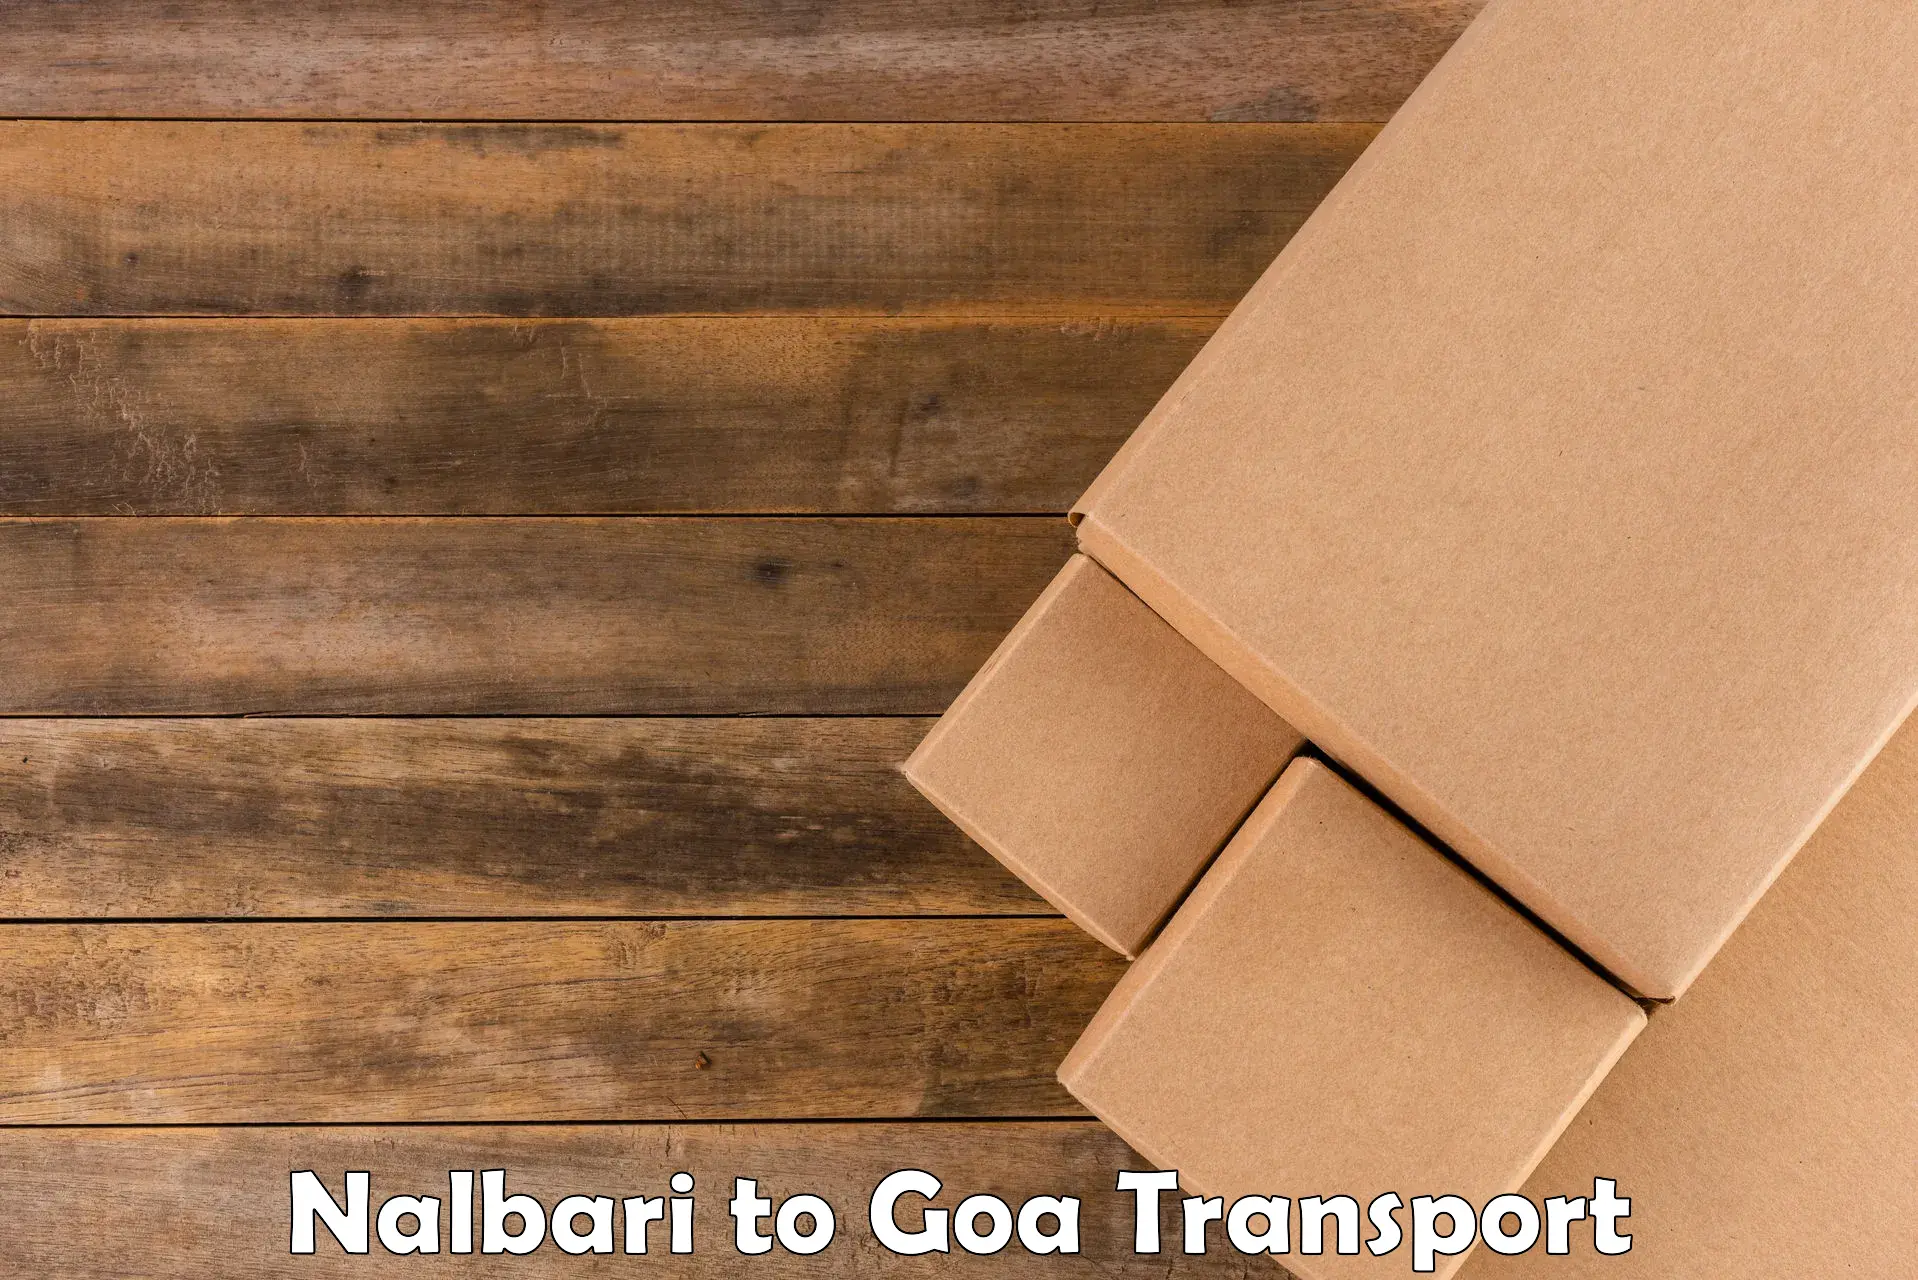 Cargo transportation services Nalbari to NIT Goa